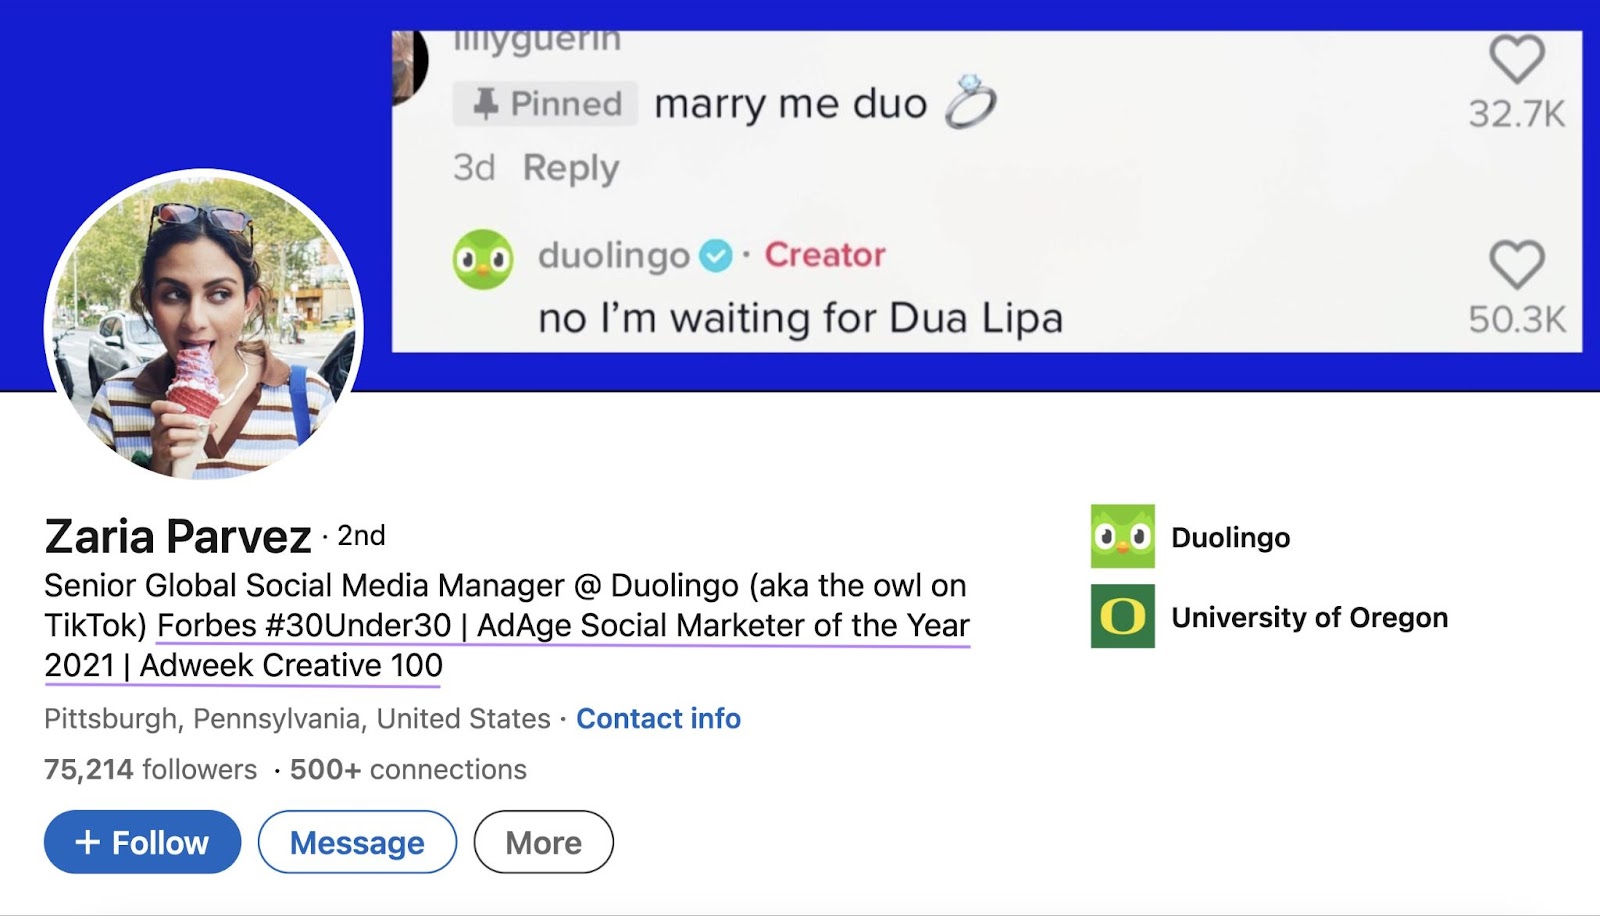 Duolingo’s senior global social media manager Zaria Parvez's LinkedIn profile